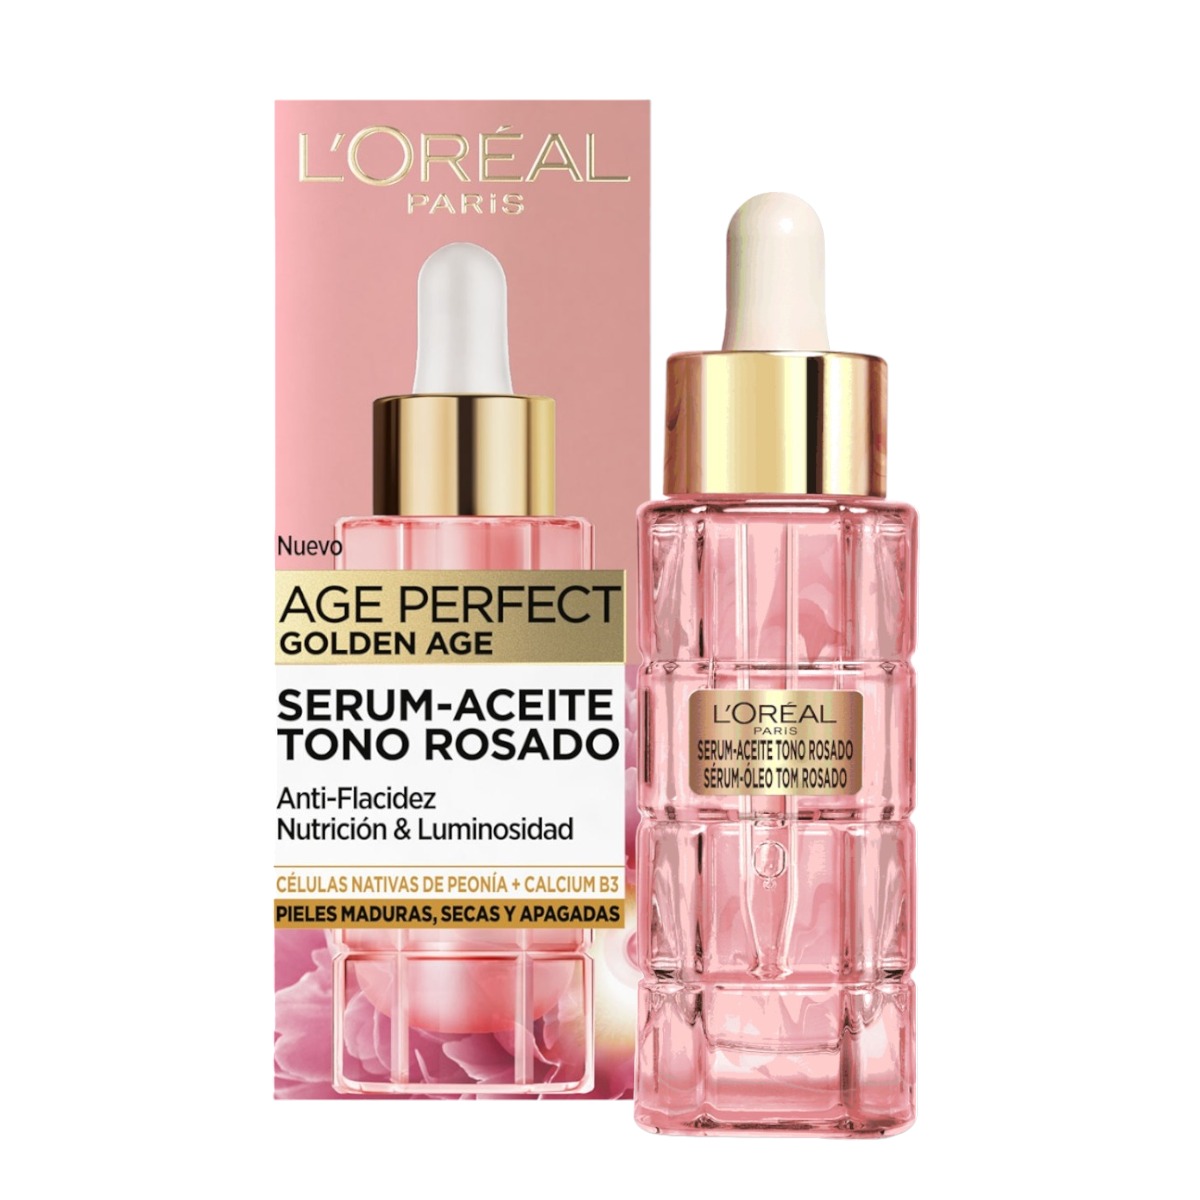 L'Oreal París Maquillaje - L'ORÉAL PARIS Age Perfect Golden Age sérum-aceite tono rosado Anti-flacidez Nutrición & Luminosidad dosificador para pieles maduras, secas y apagadas 30 ml